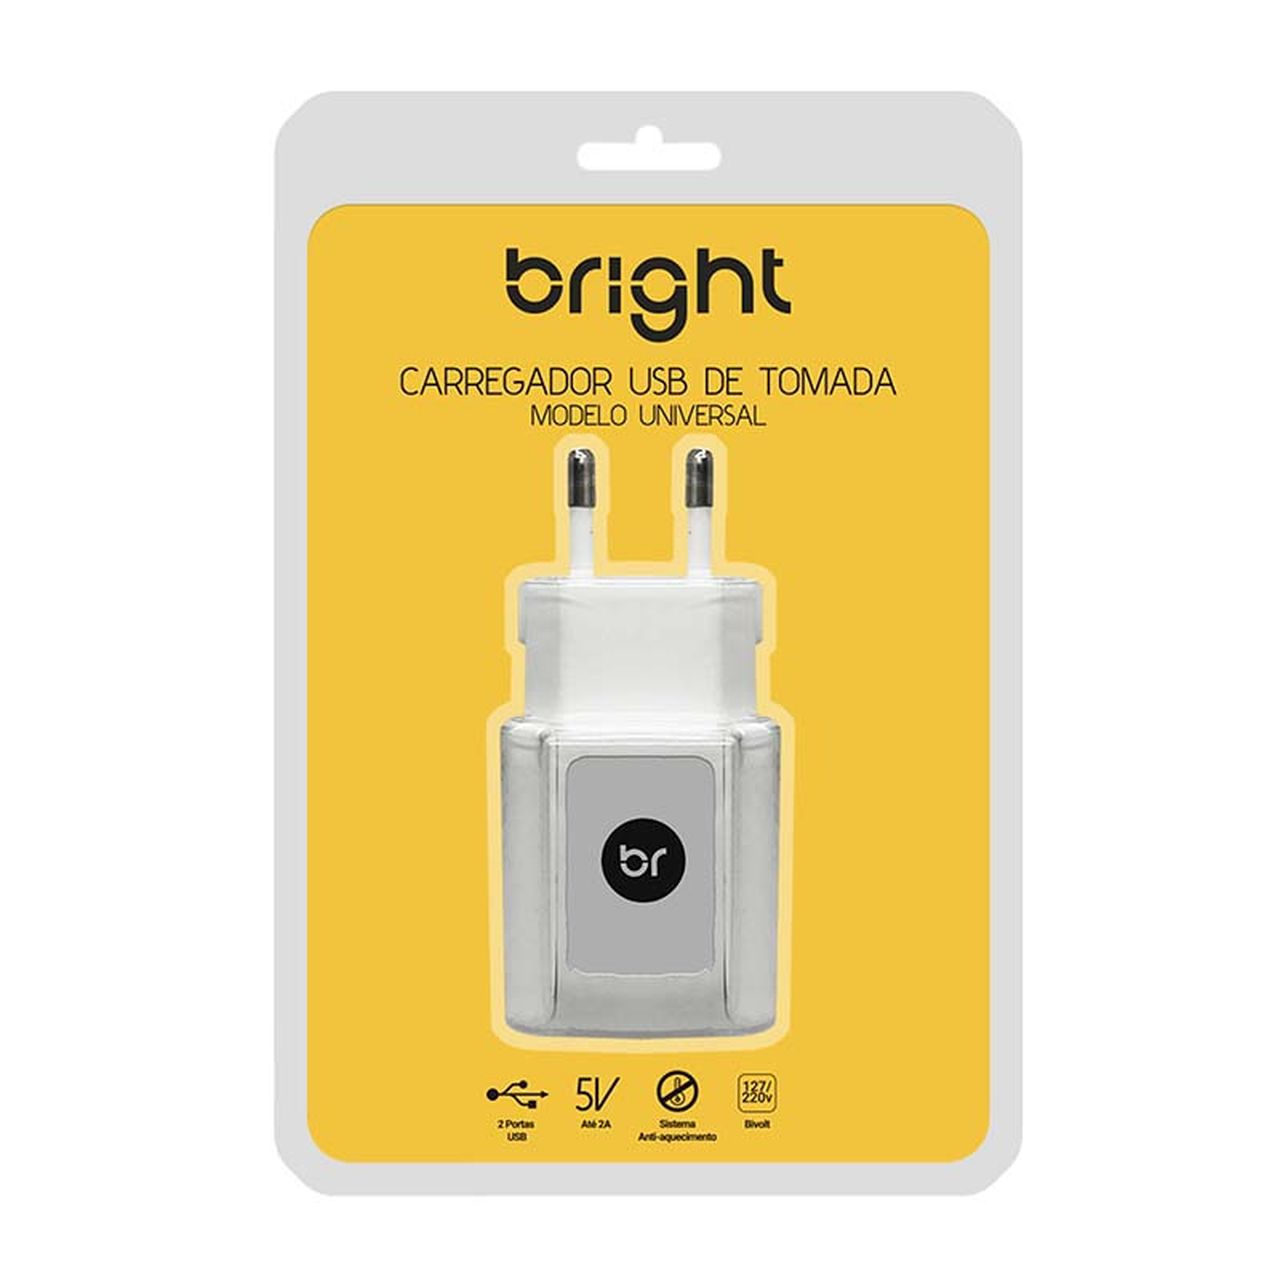 Carregador USB de Tomada com 2 portas USB Bivolt 377 - Bright - BRIGHT